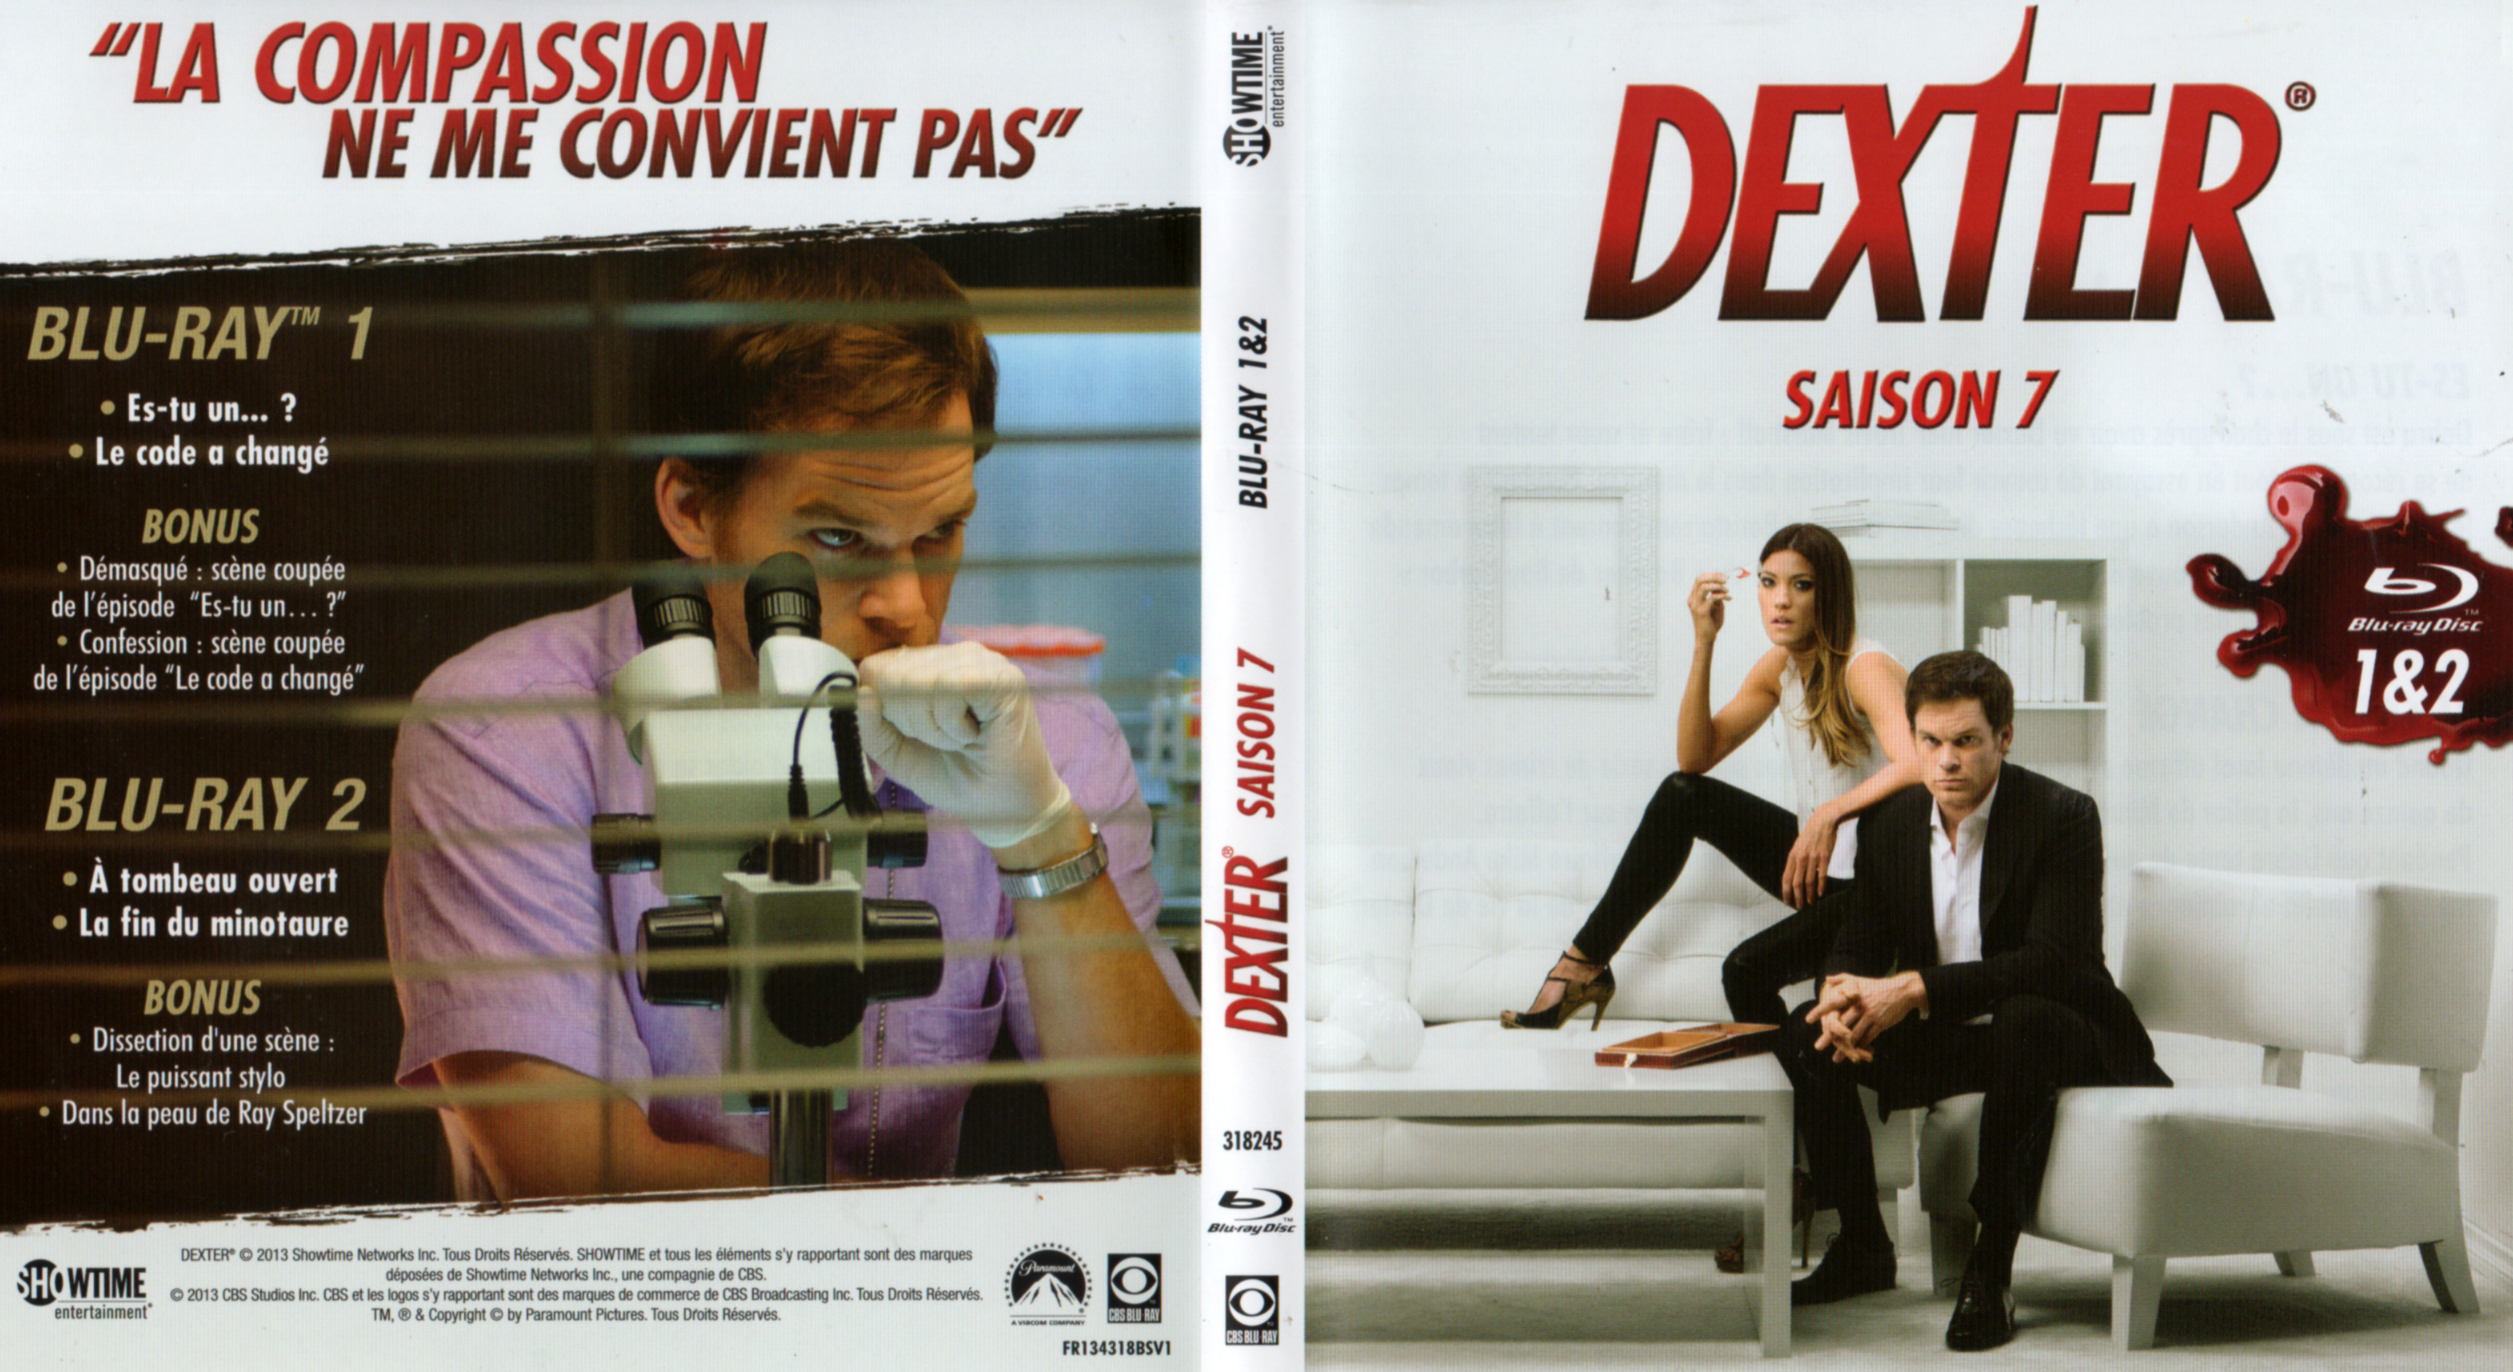 Jaquette DVD Dexter saison 7 DISC 1 (BLU-RAY)